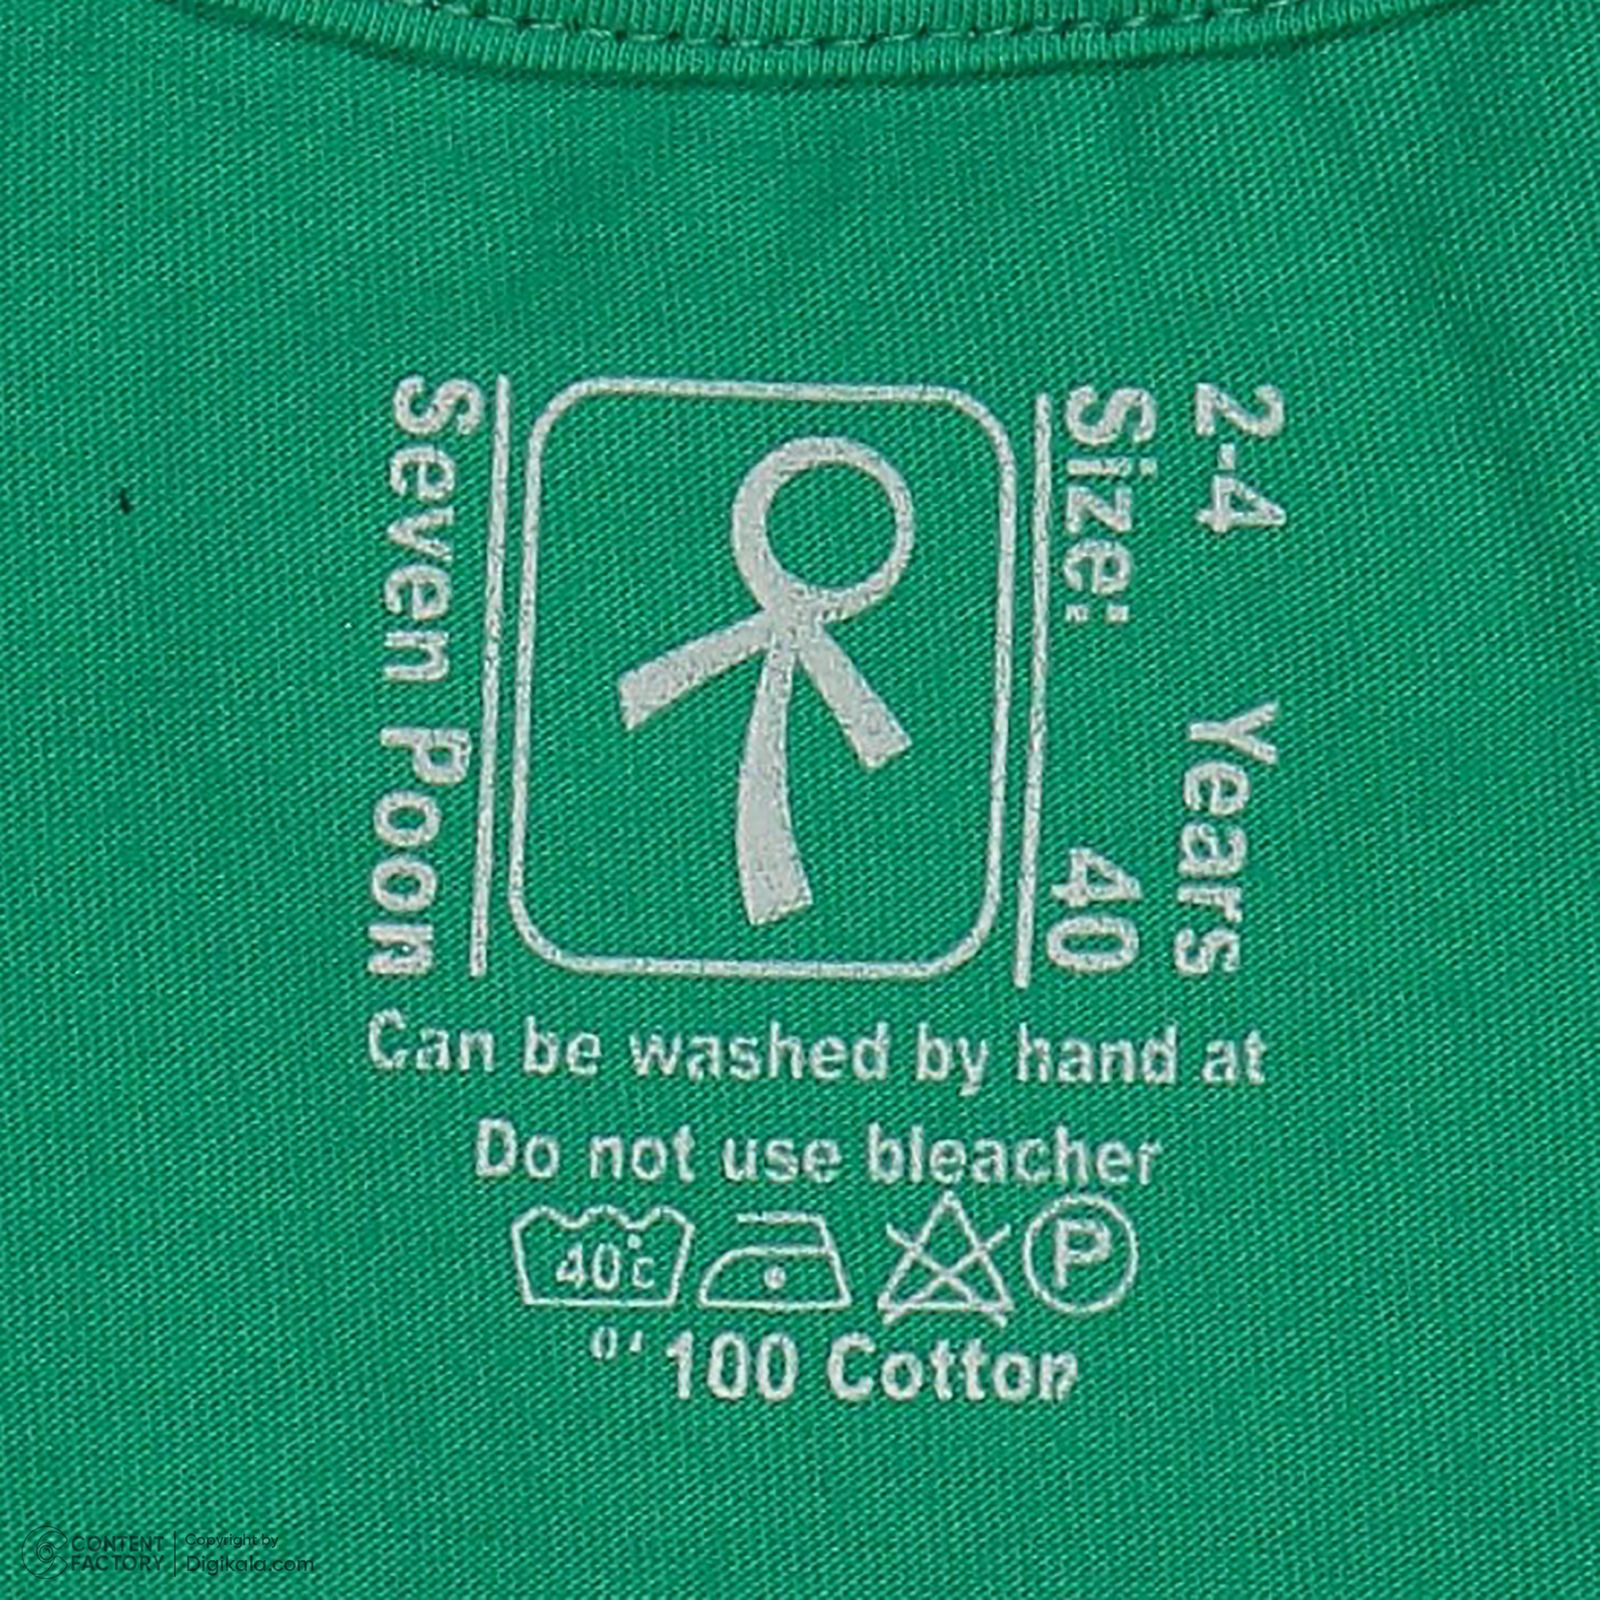 ست تی شرت آستین کوتاه و شلوارک پسرانه سون پون مدل 1096 رنگ سبز -  - 8